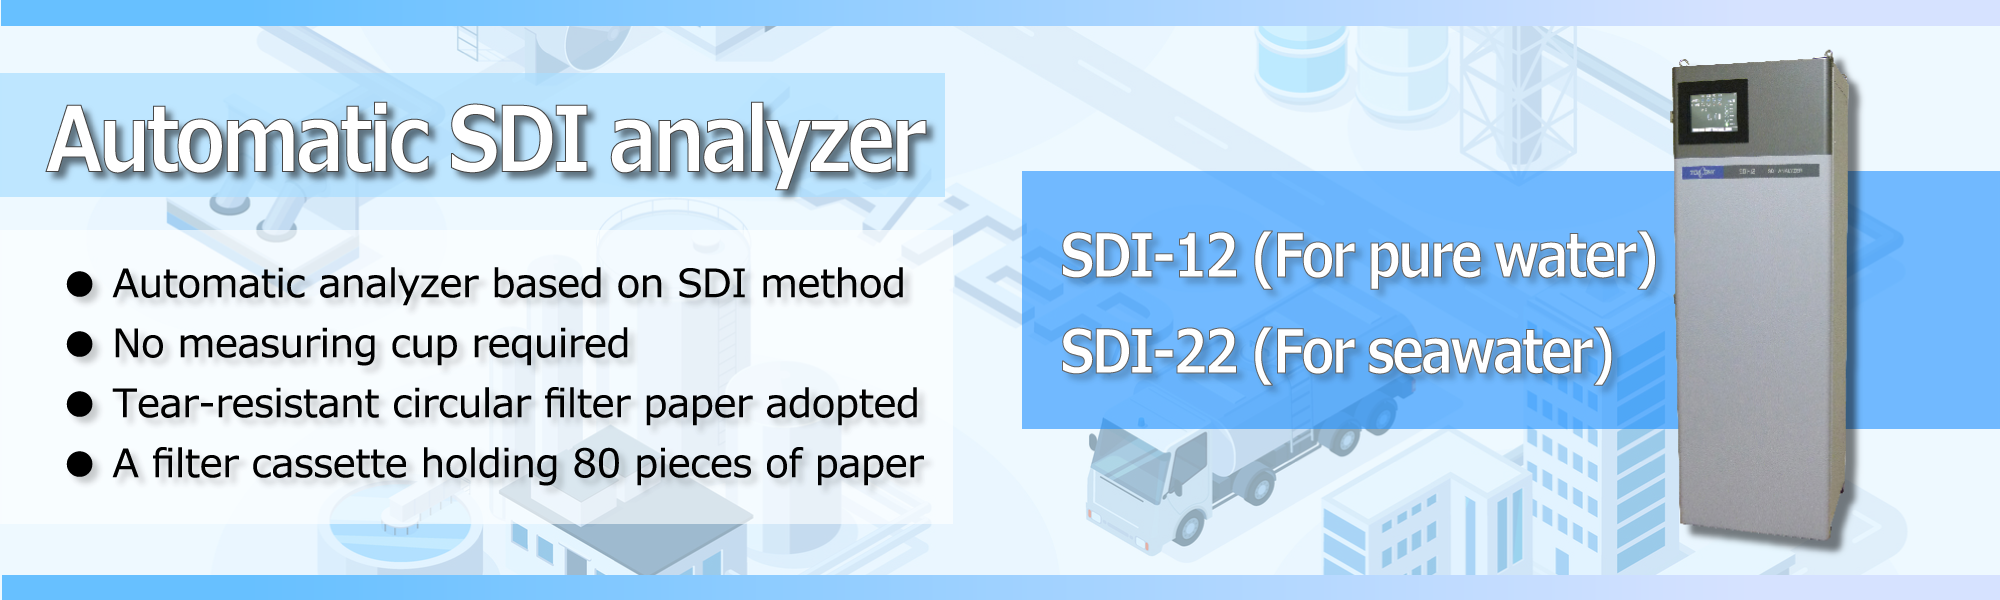 SDI Analyzer